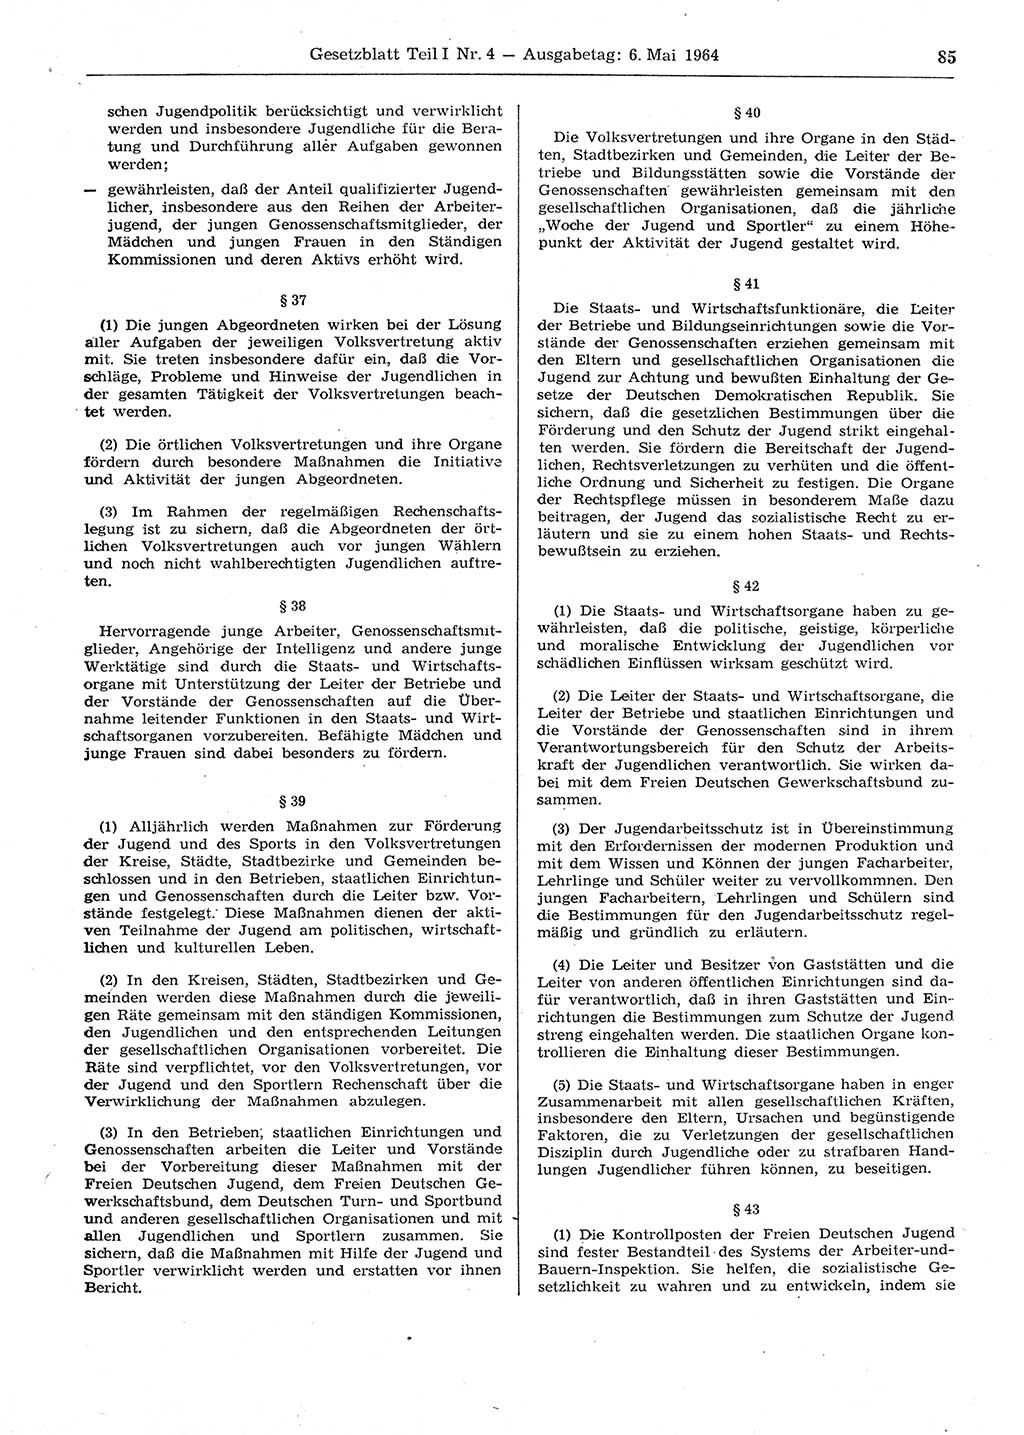 Gesetzblatt (GBl.) der Deutschen Demokratischen Republik (DDR) Teil Ⅰ 1964, Seite 85 (GBl. DDR Ⅰ 1964, S. 85)